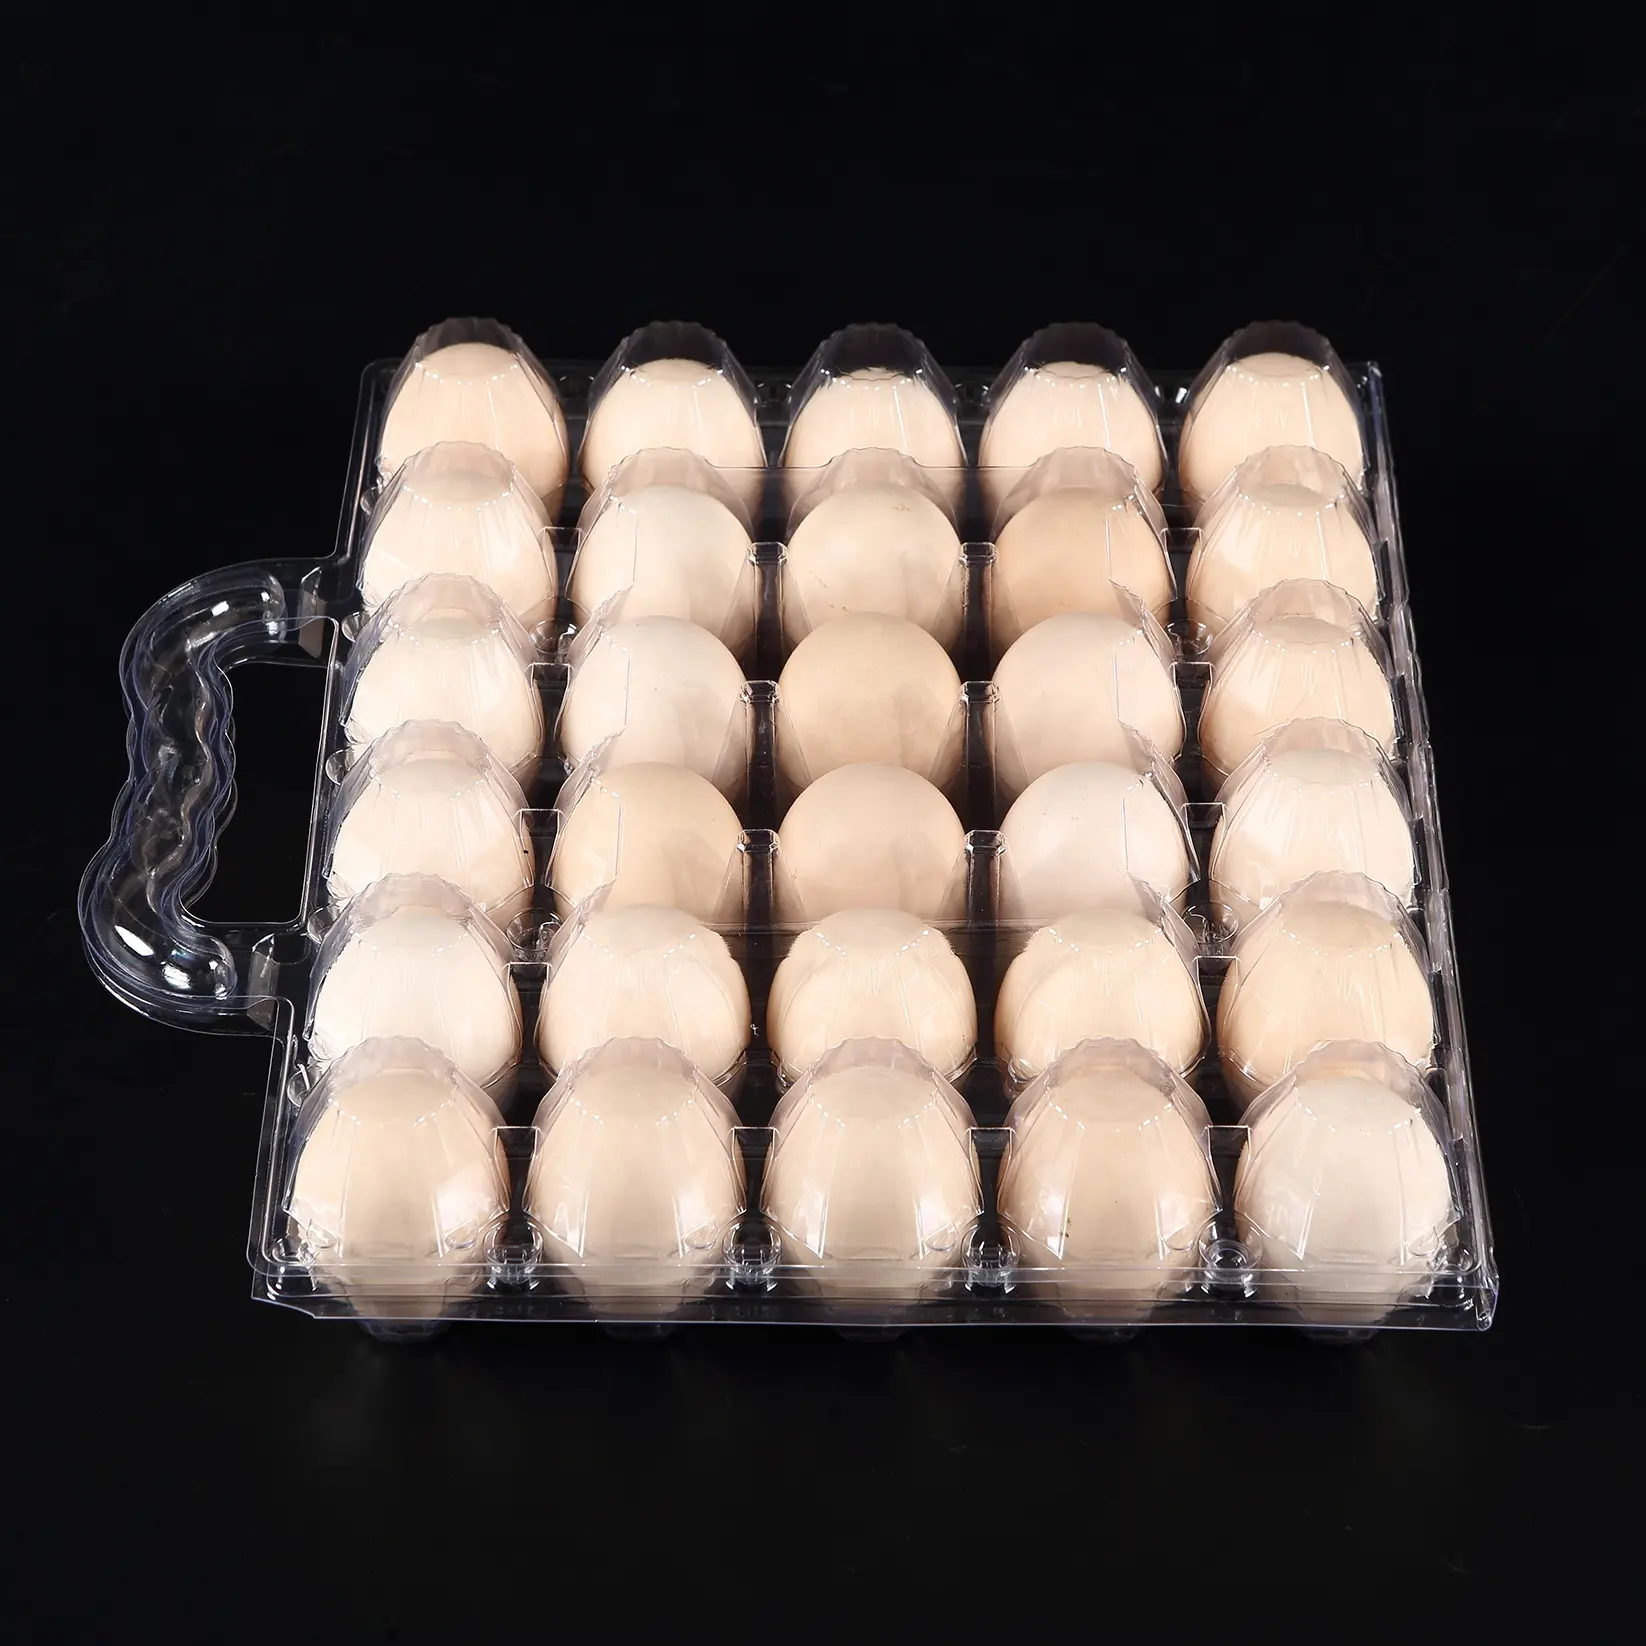 Grande 30 uova vassoio di cartone per uova di anatra grandi uova con manico contenitori di plastica cavità Count OEM & ODM su misura